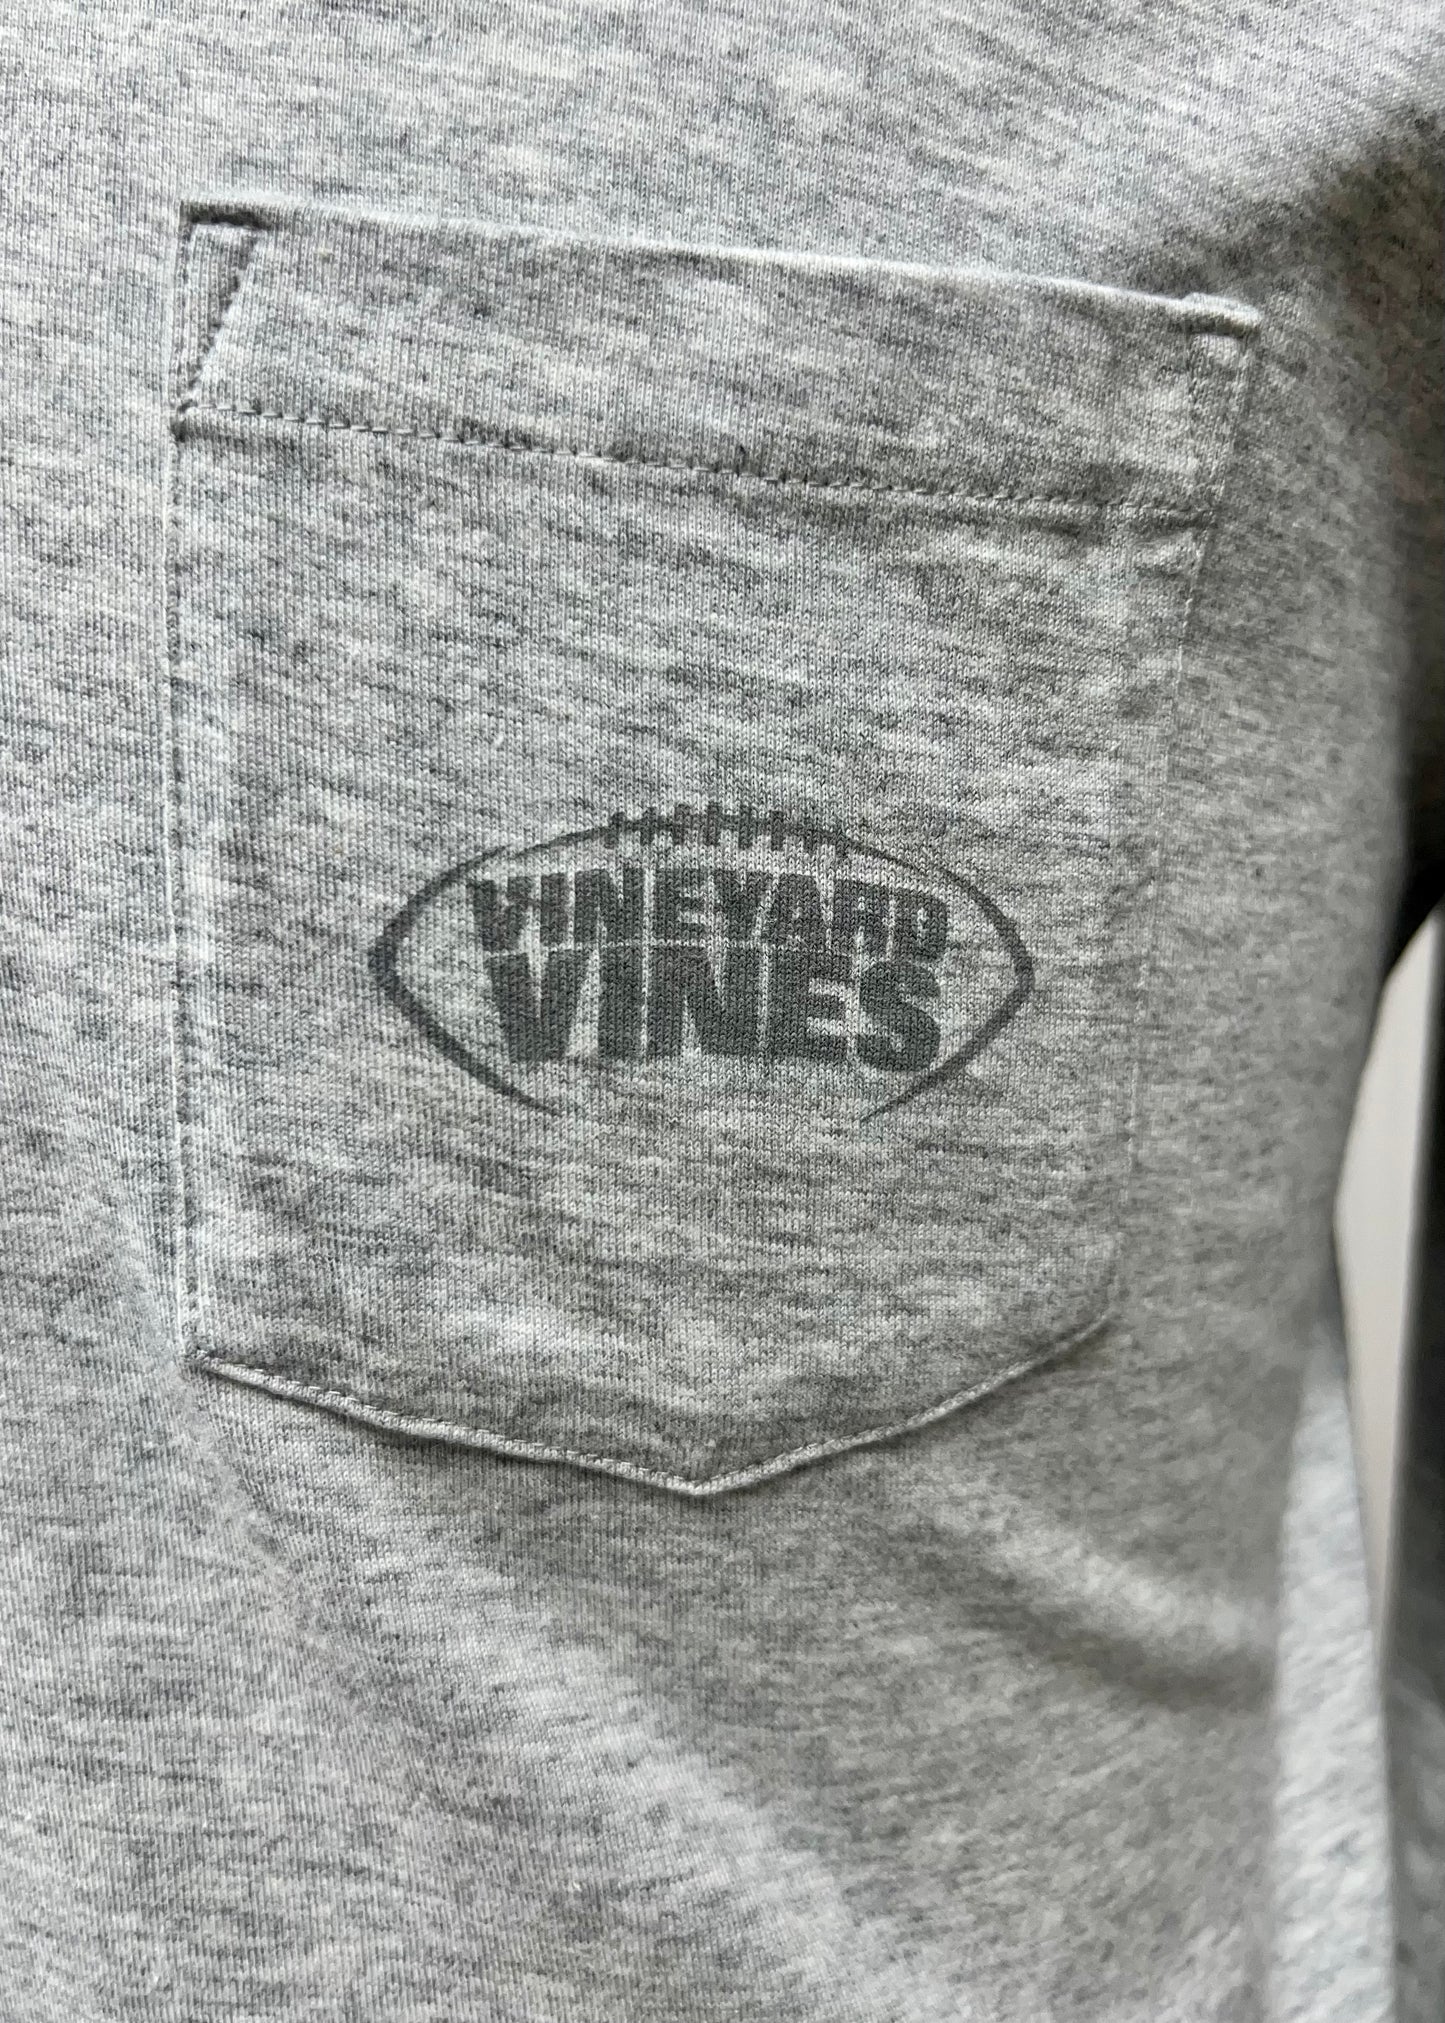 Camiseta con capucha Vineyard Vines 🐳 color gris con Diseño de Fútbol americano en bolsillo Talla Medium